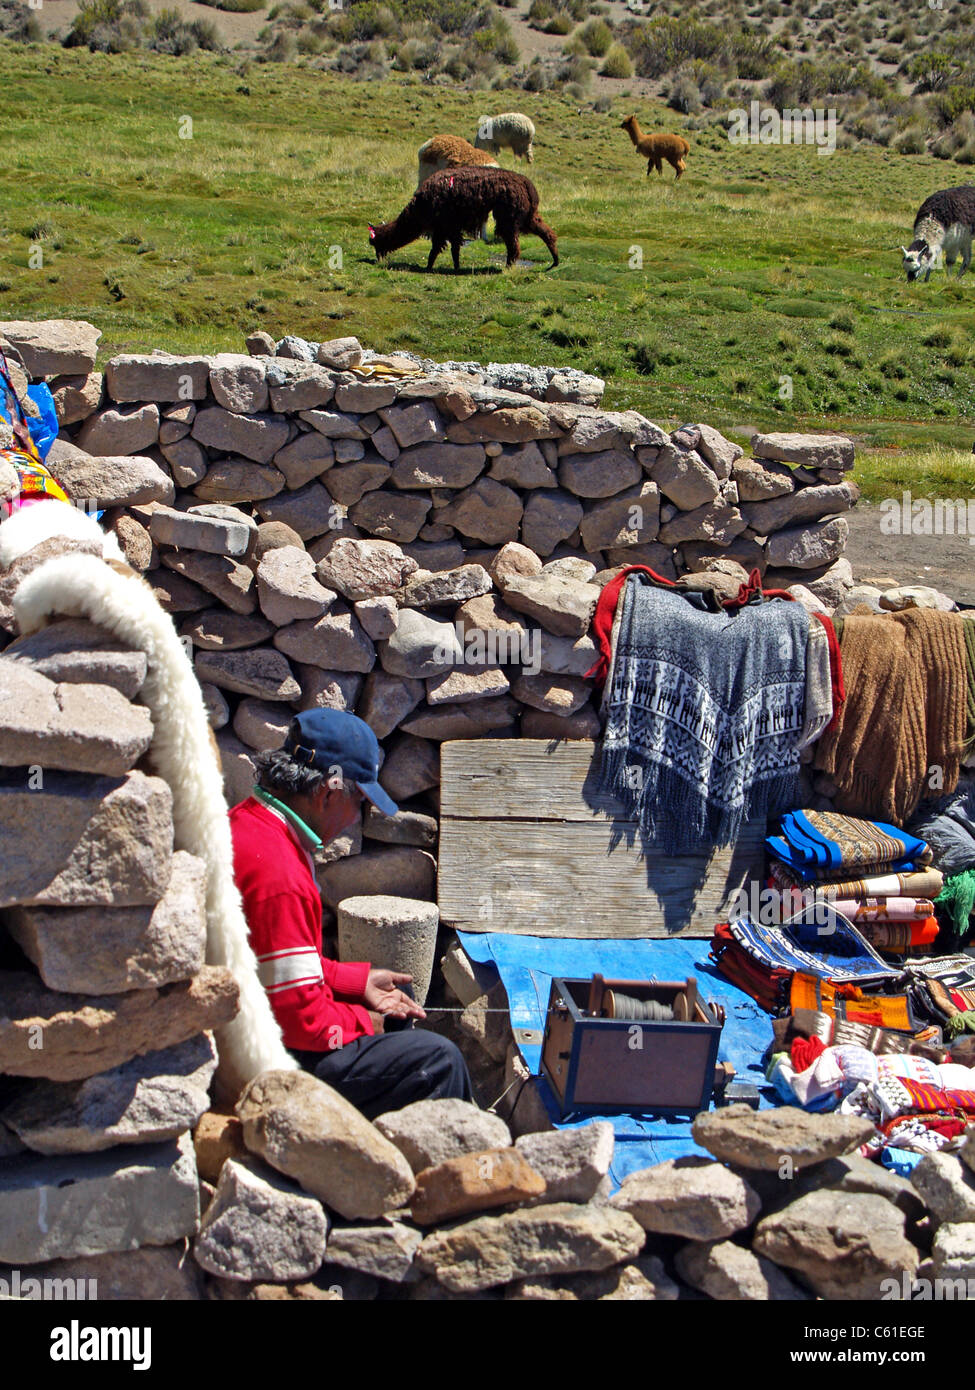 La filature de laine d'alpaga dans Parque Nacional Lauca, Chili Banque D'Images